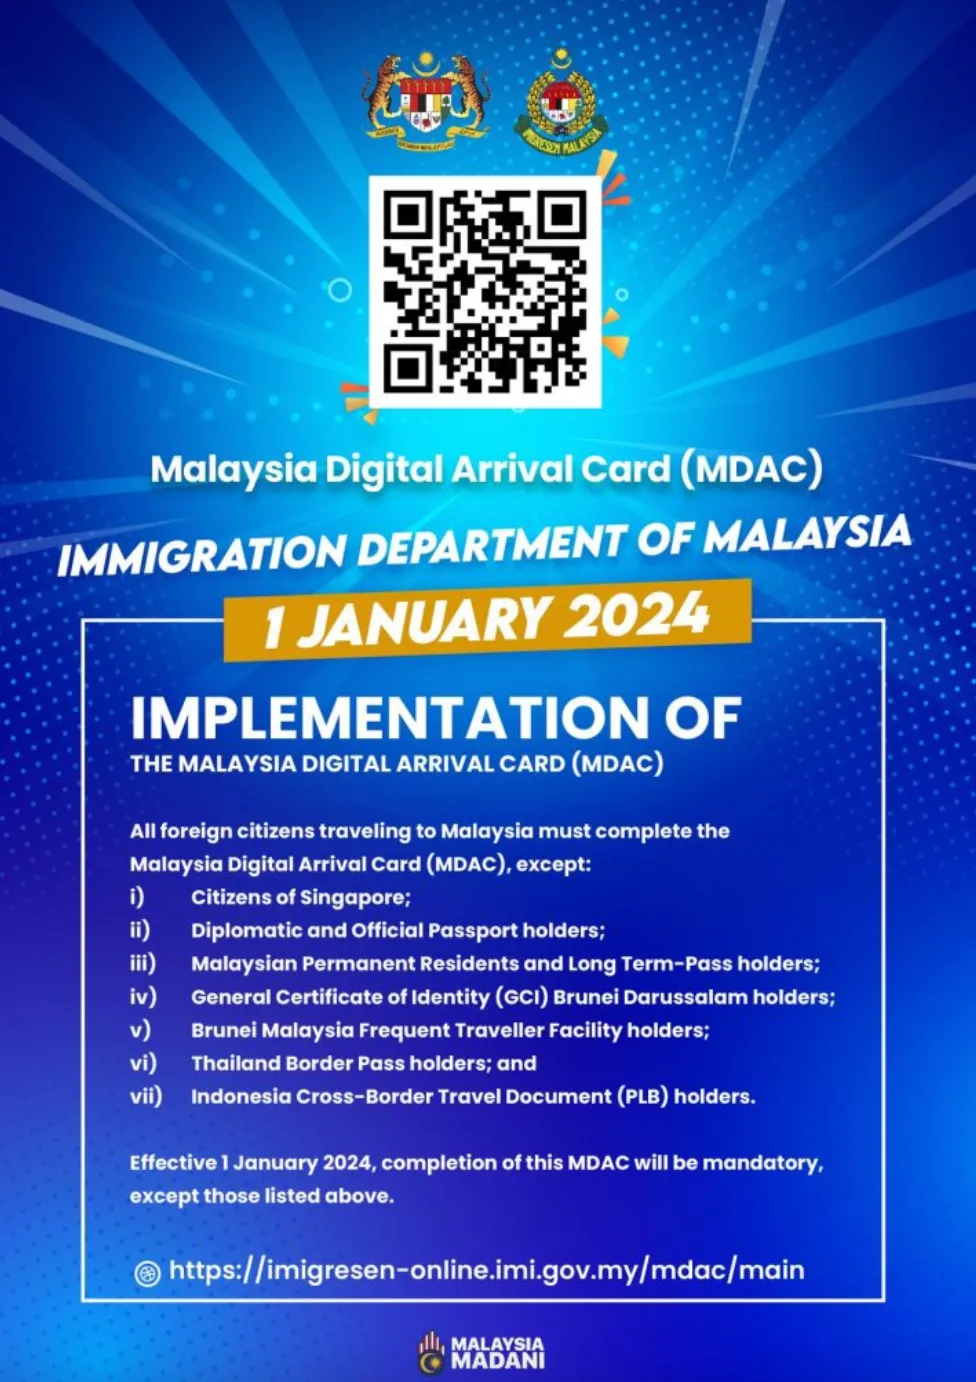 Що відомо про рішення Малайзії спростити візовий режим